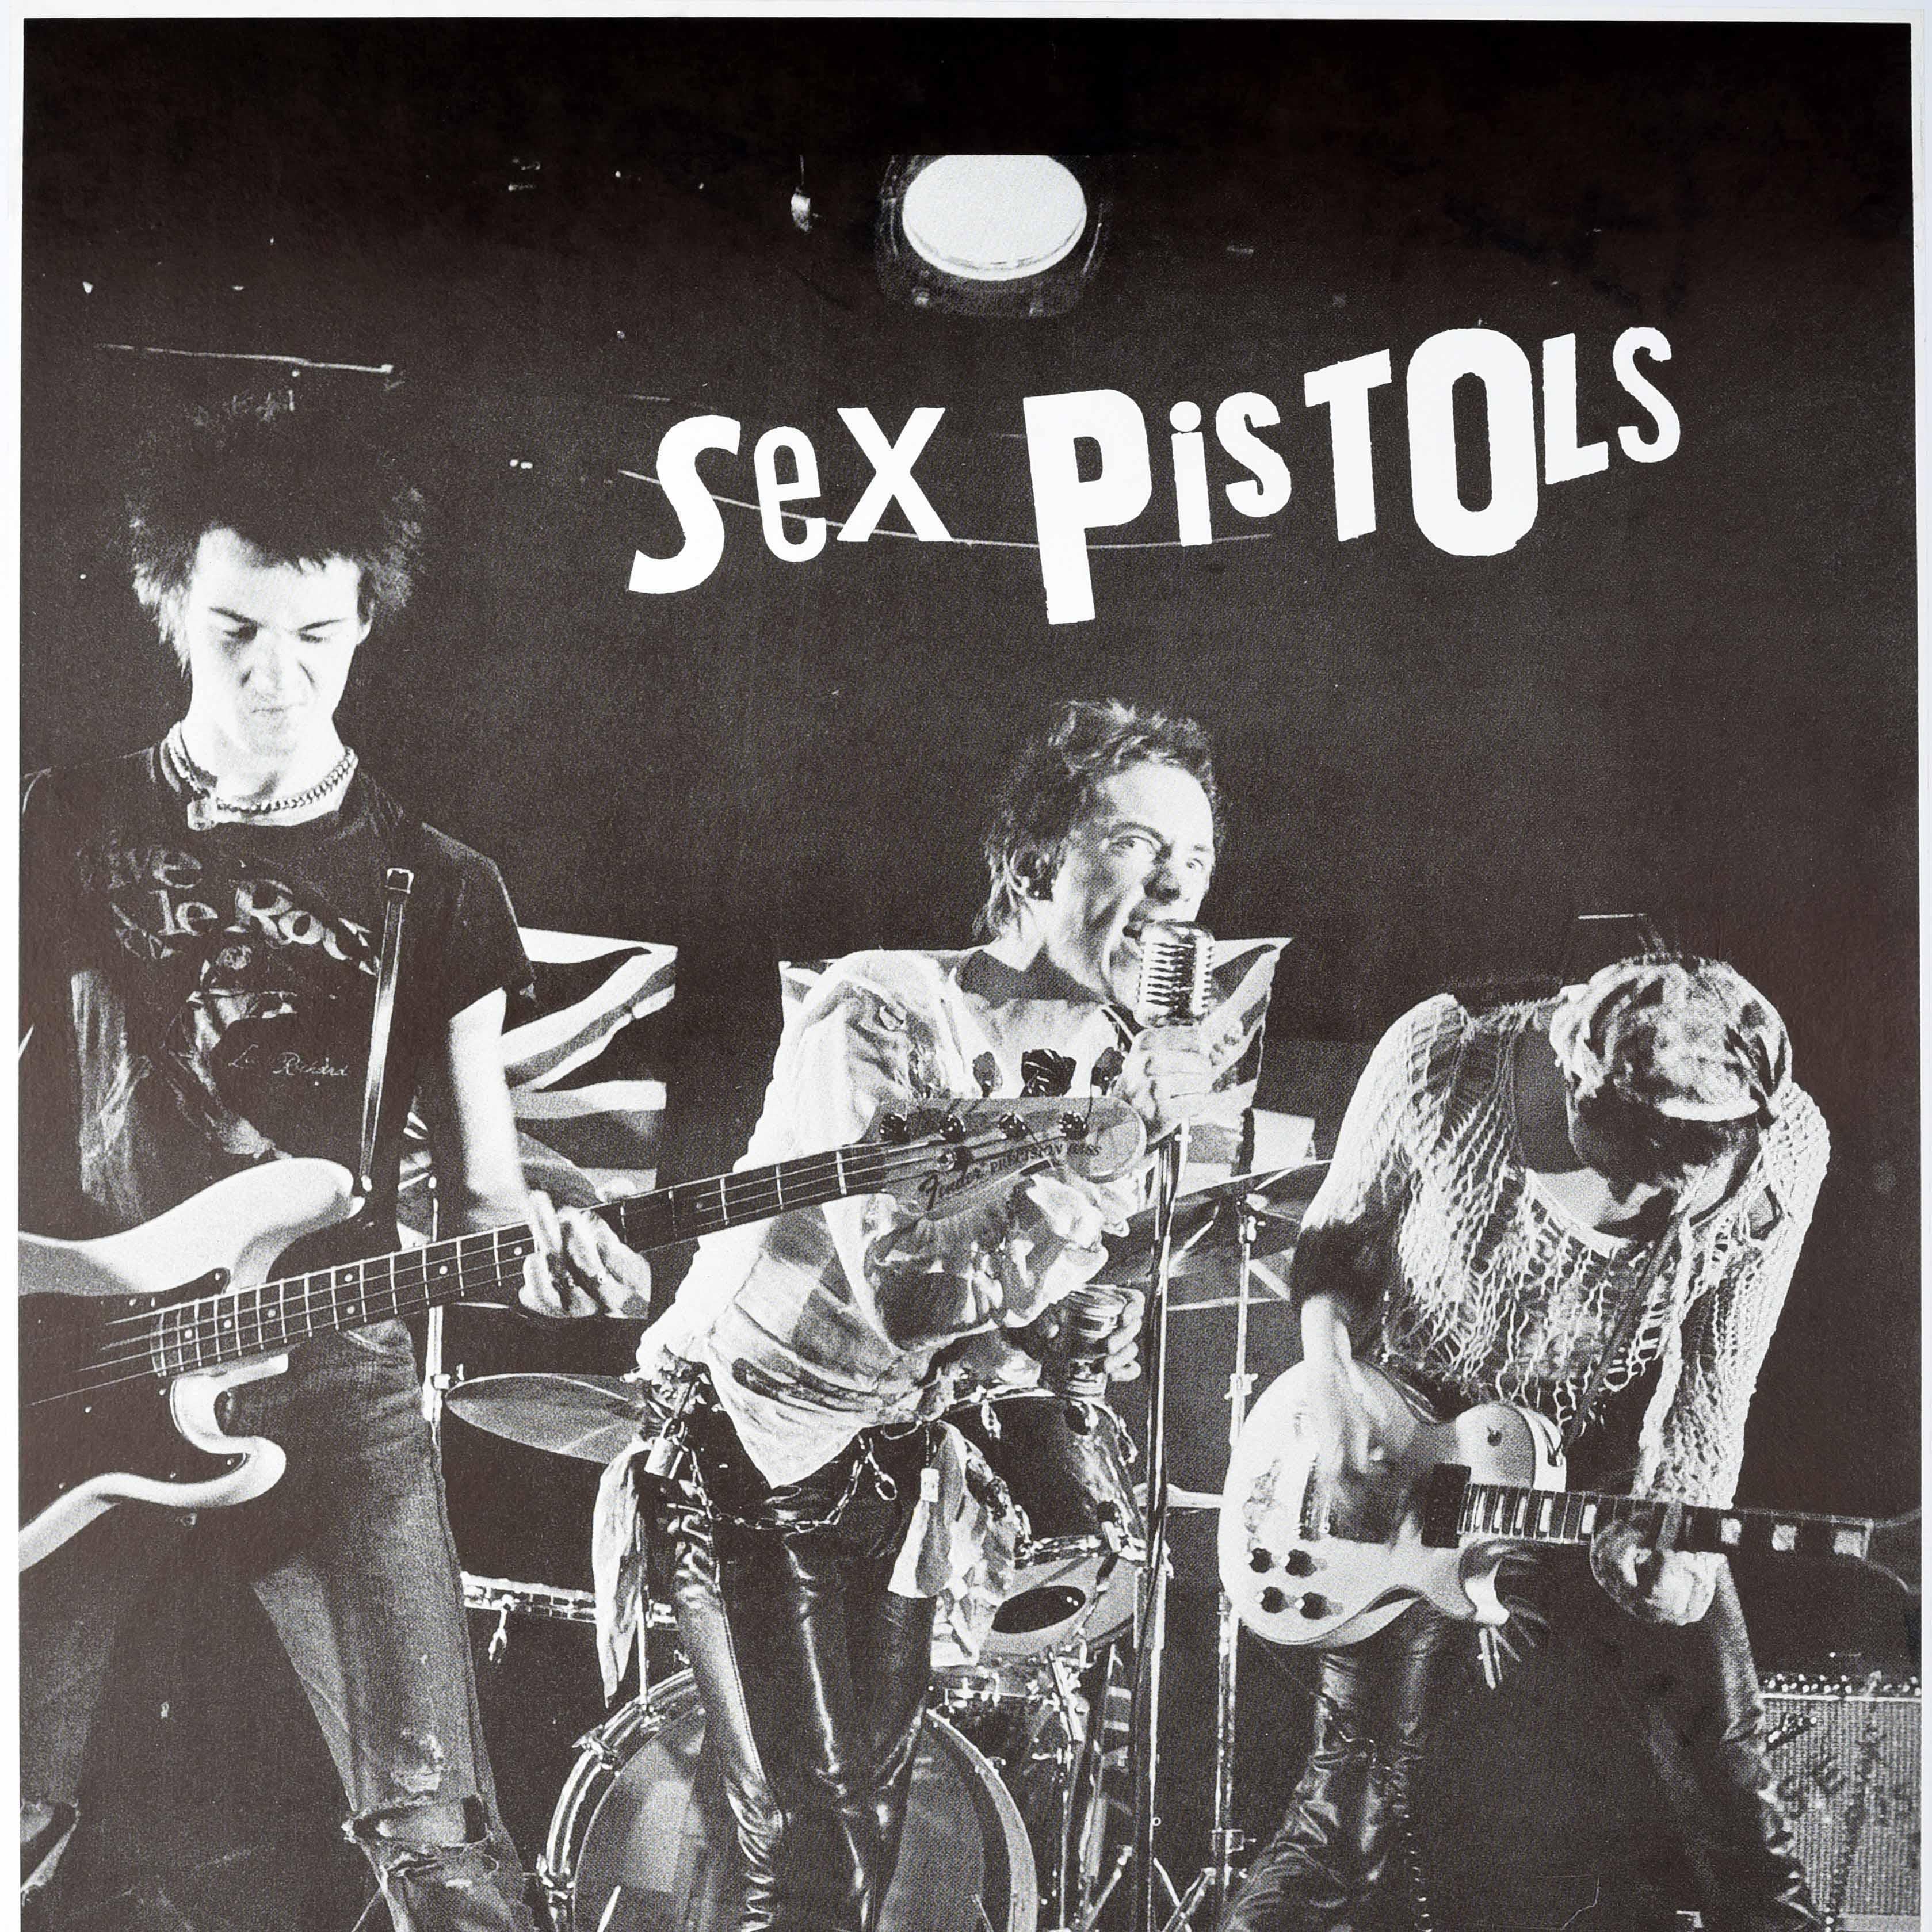 Originales Vintage-Werbeplakat für die 1976 veröffentlichte Debütsingle der einflussreichen englischen Punkrockband Sex Pistols (1975-1978 und spätere Wiedervereinigungen) - Sex Pistols Anarchy in the UK - mit einem Schwarz-Weiß-Foto der Band auf